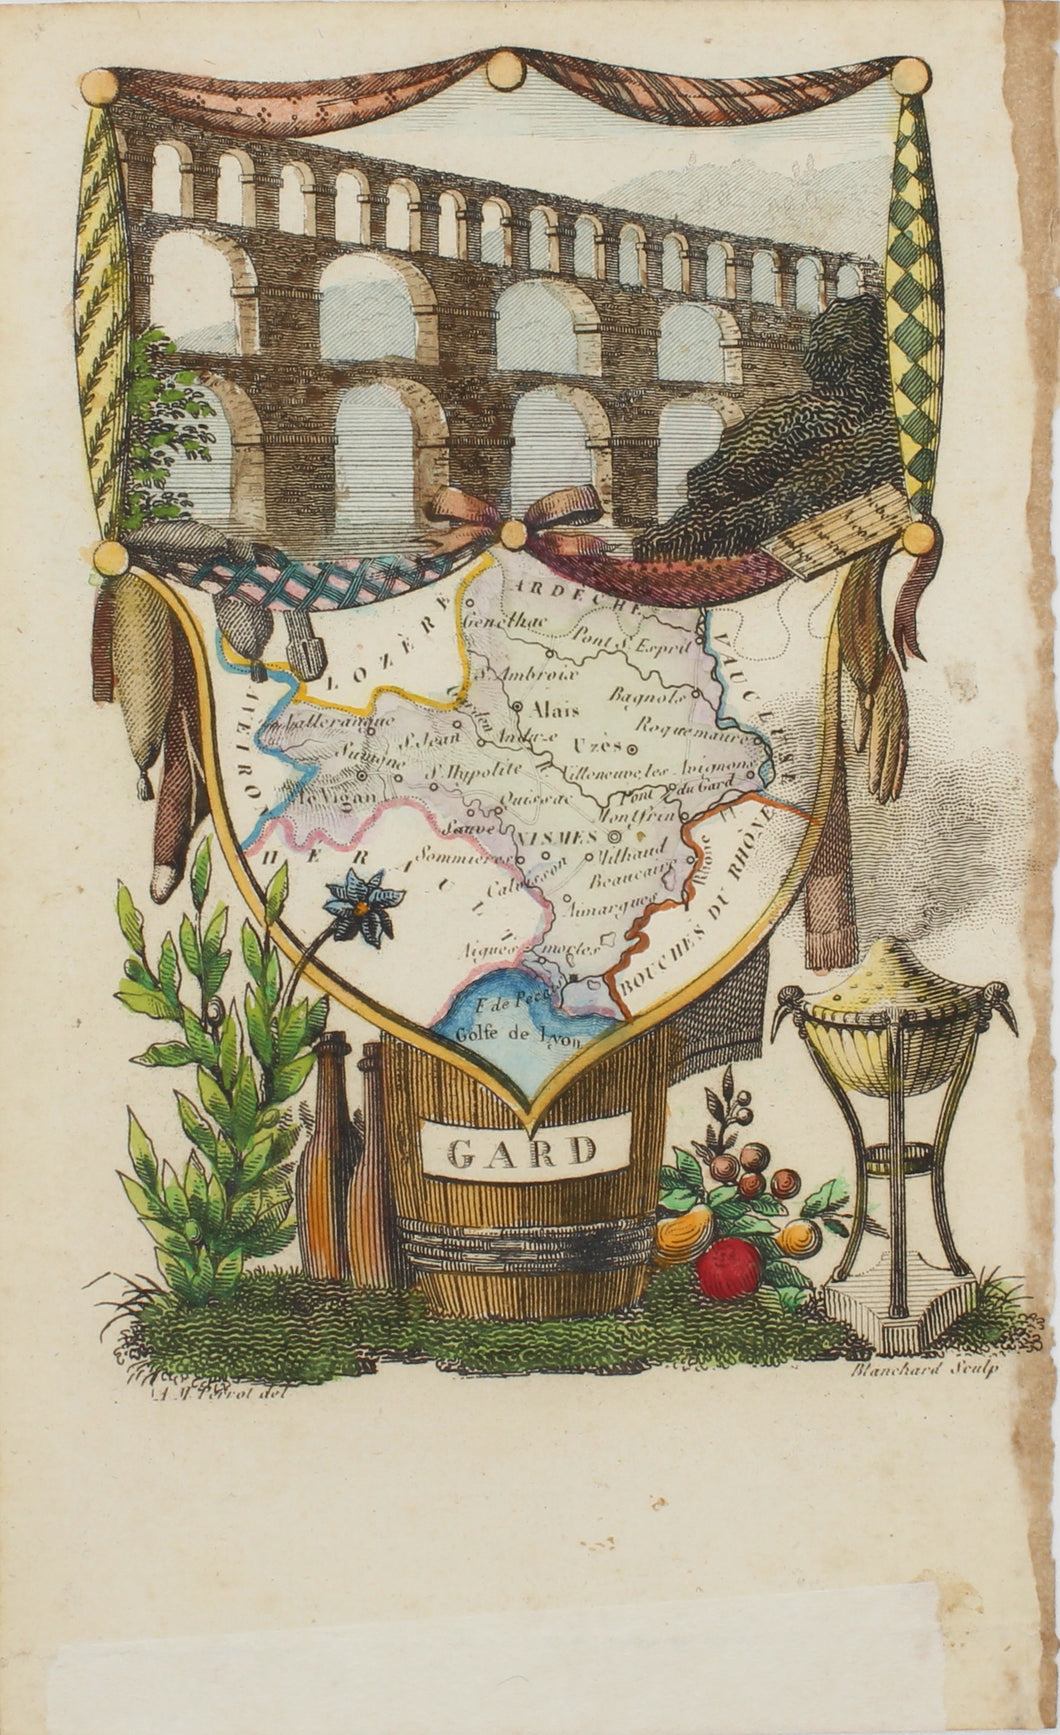 Map, Perrot Aristide Michel, GARD, Atlas des Departments de la France, c1825